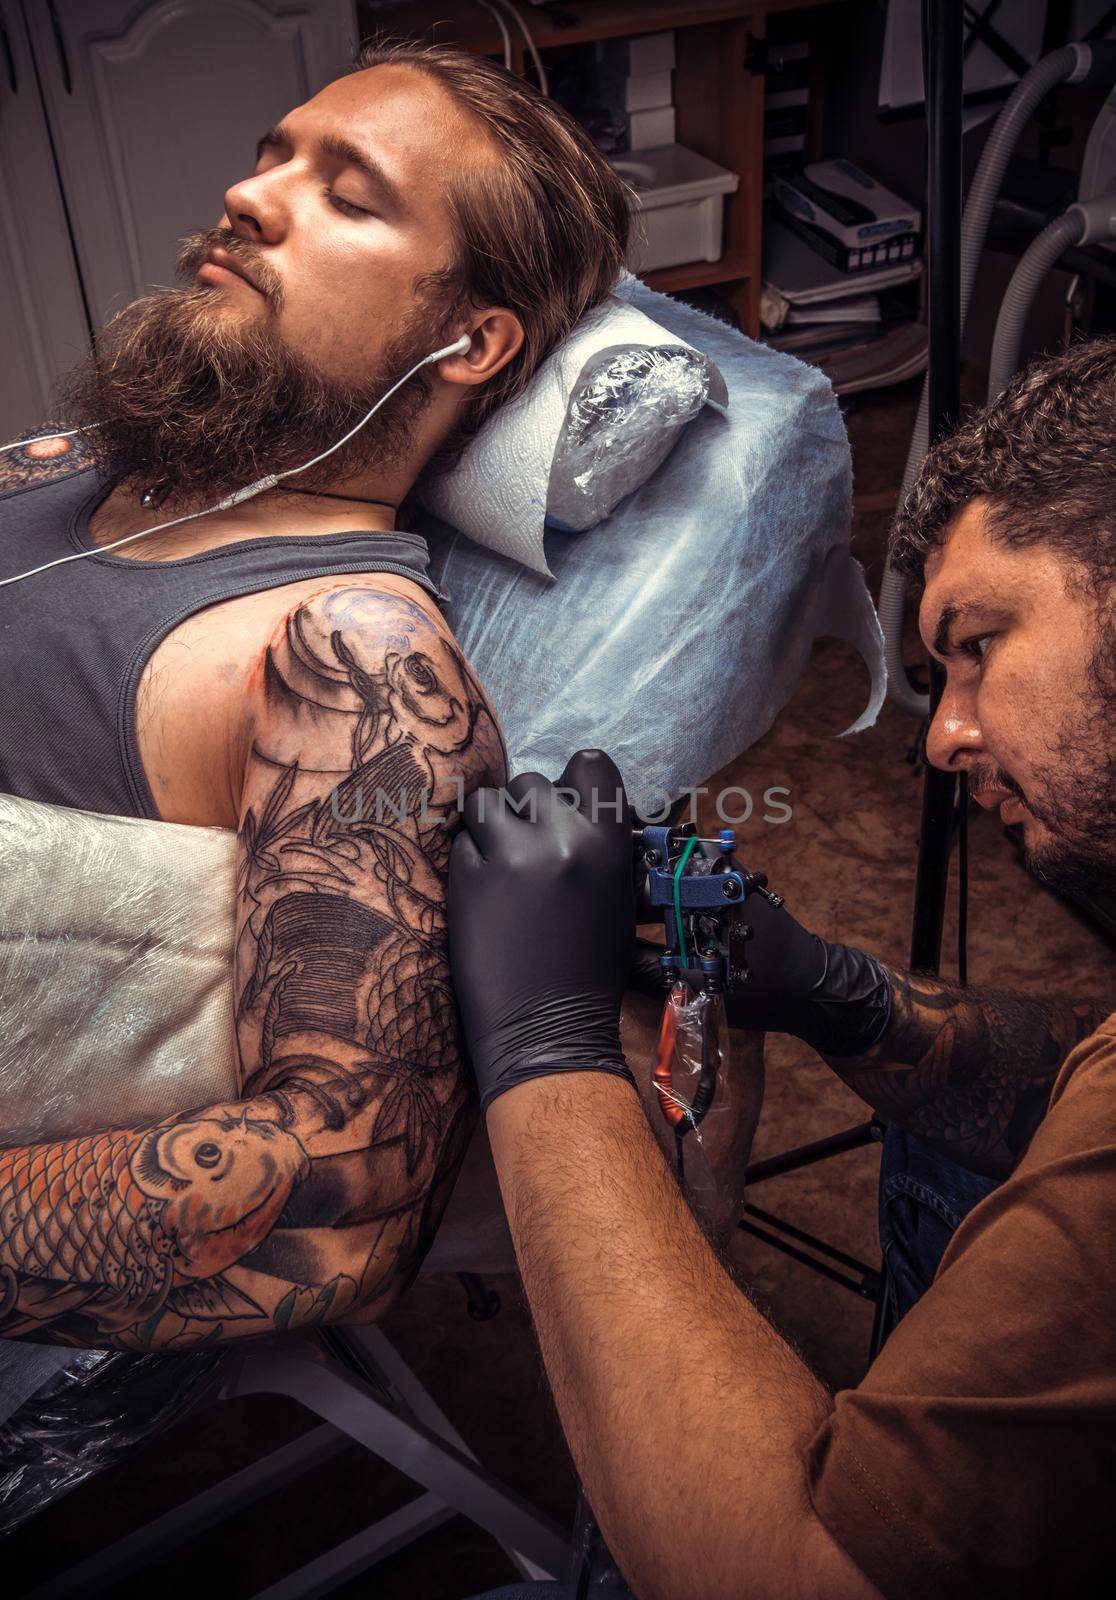 Tattooer doing tattoo in tattoo parlour./Professional tattooist working tattooing in salon.